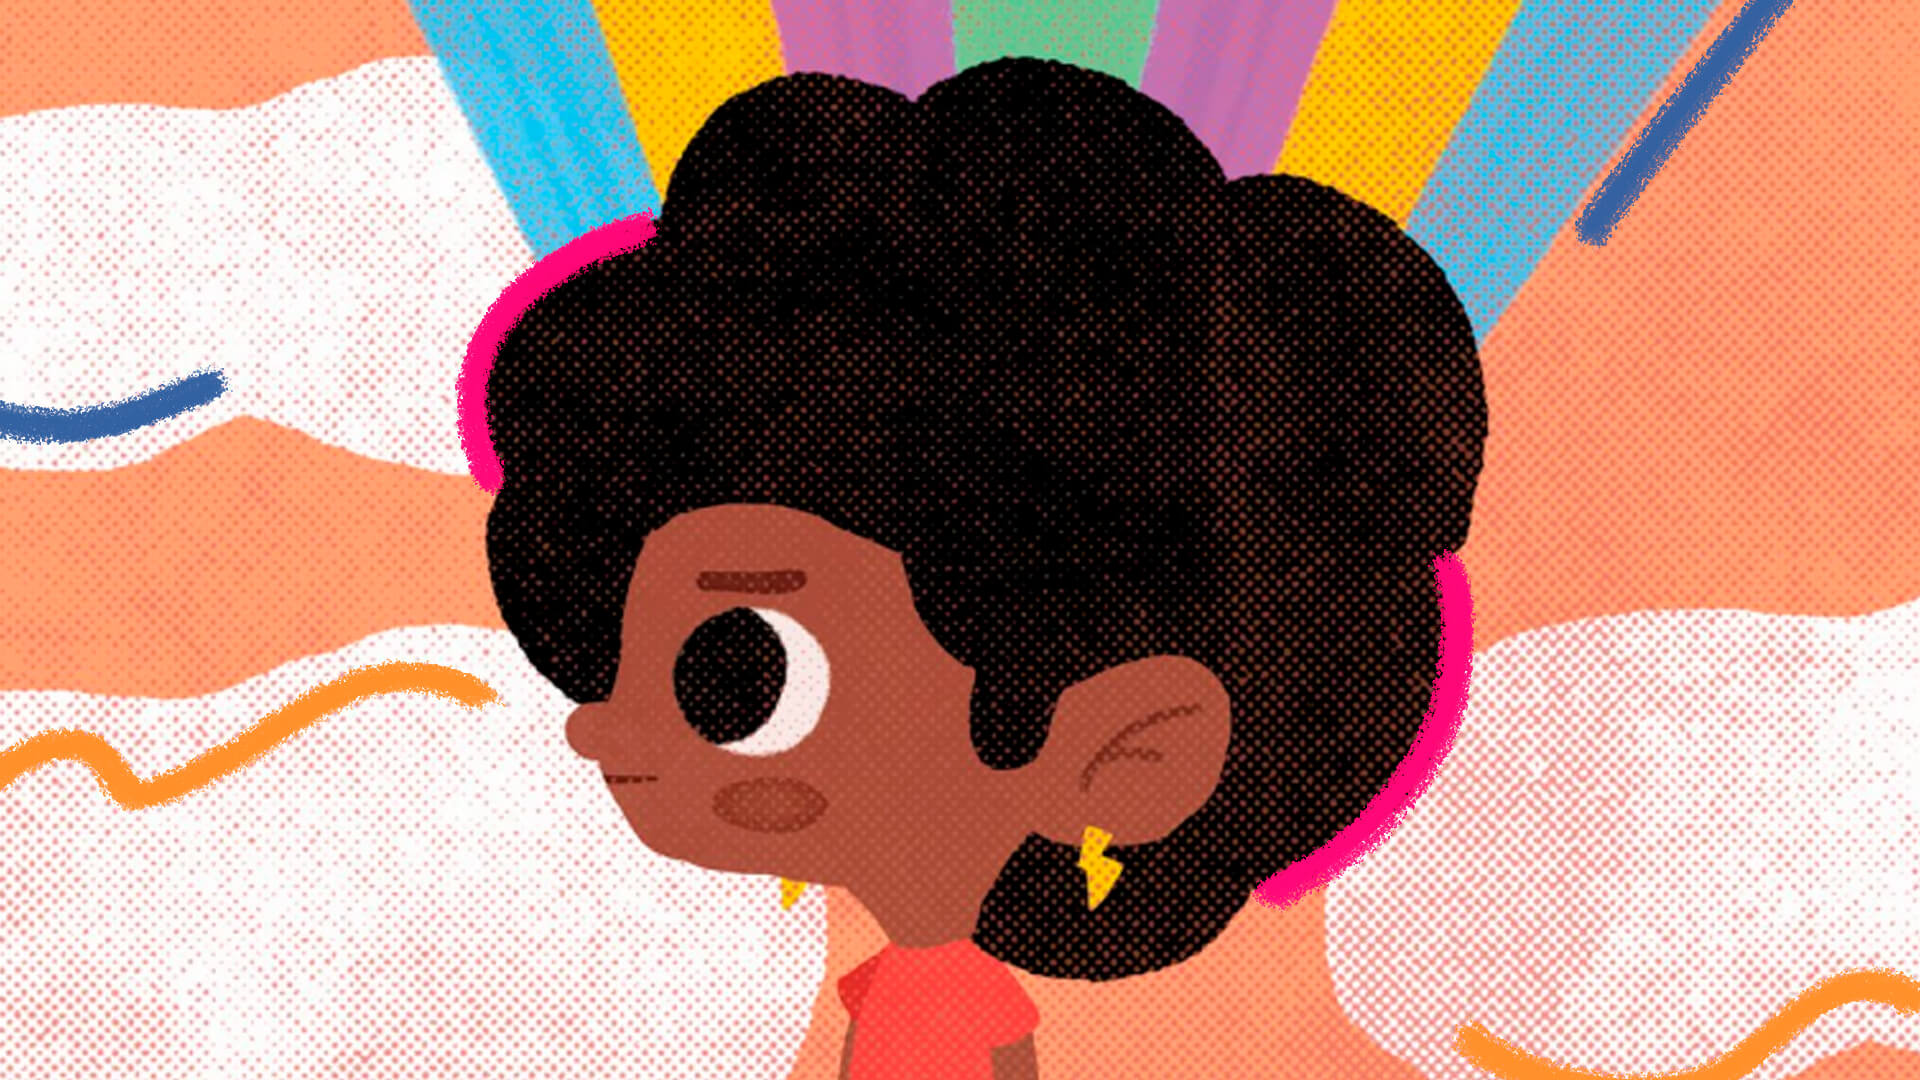 Ilustração do livro Amoras, de Emicida. A imagem mostra uma menina negra de perfil, com cabelos afro escuros e feição séria.